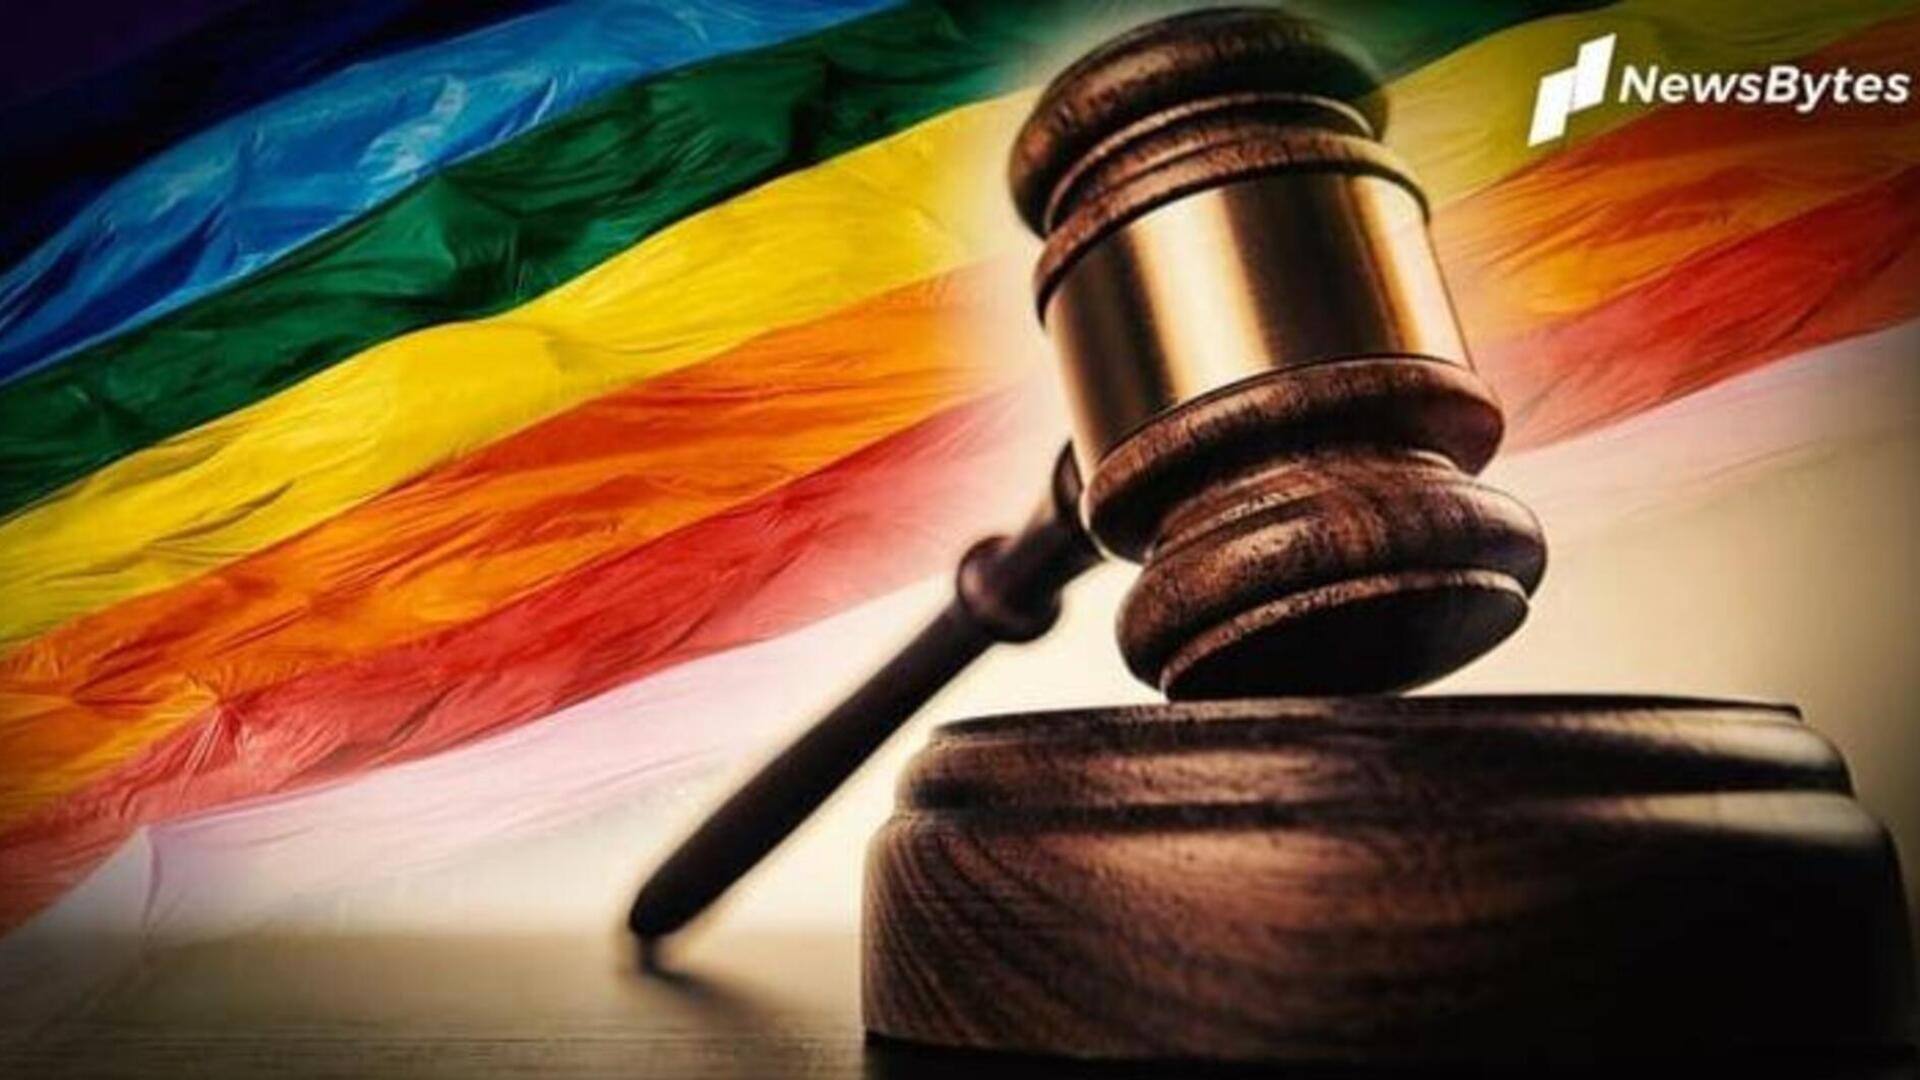 समलैंगिक विवाह से संबंधित याचिकाओं पर सुनवाई पूरी, सुप्रीम कोर्ट ने सुरक्षित रखा फैसला